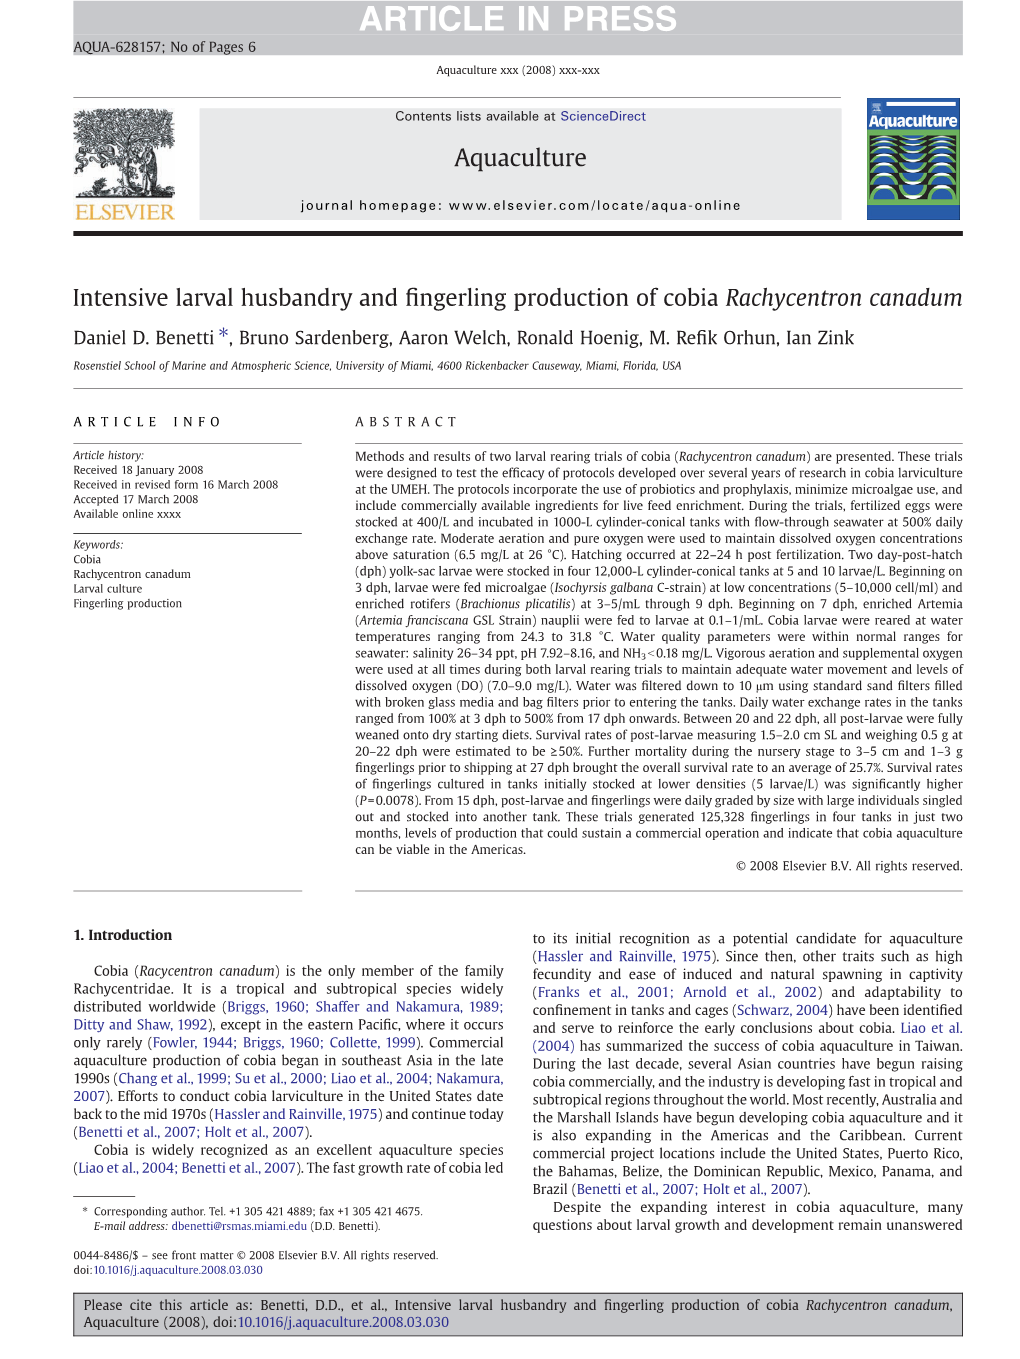 ARTICLE in PRESS AQUA-628157; No of Pages 6 Aquaculture Xxx (2008) Xxx-Xxx